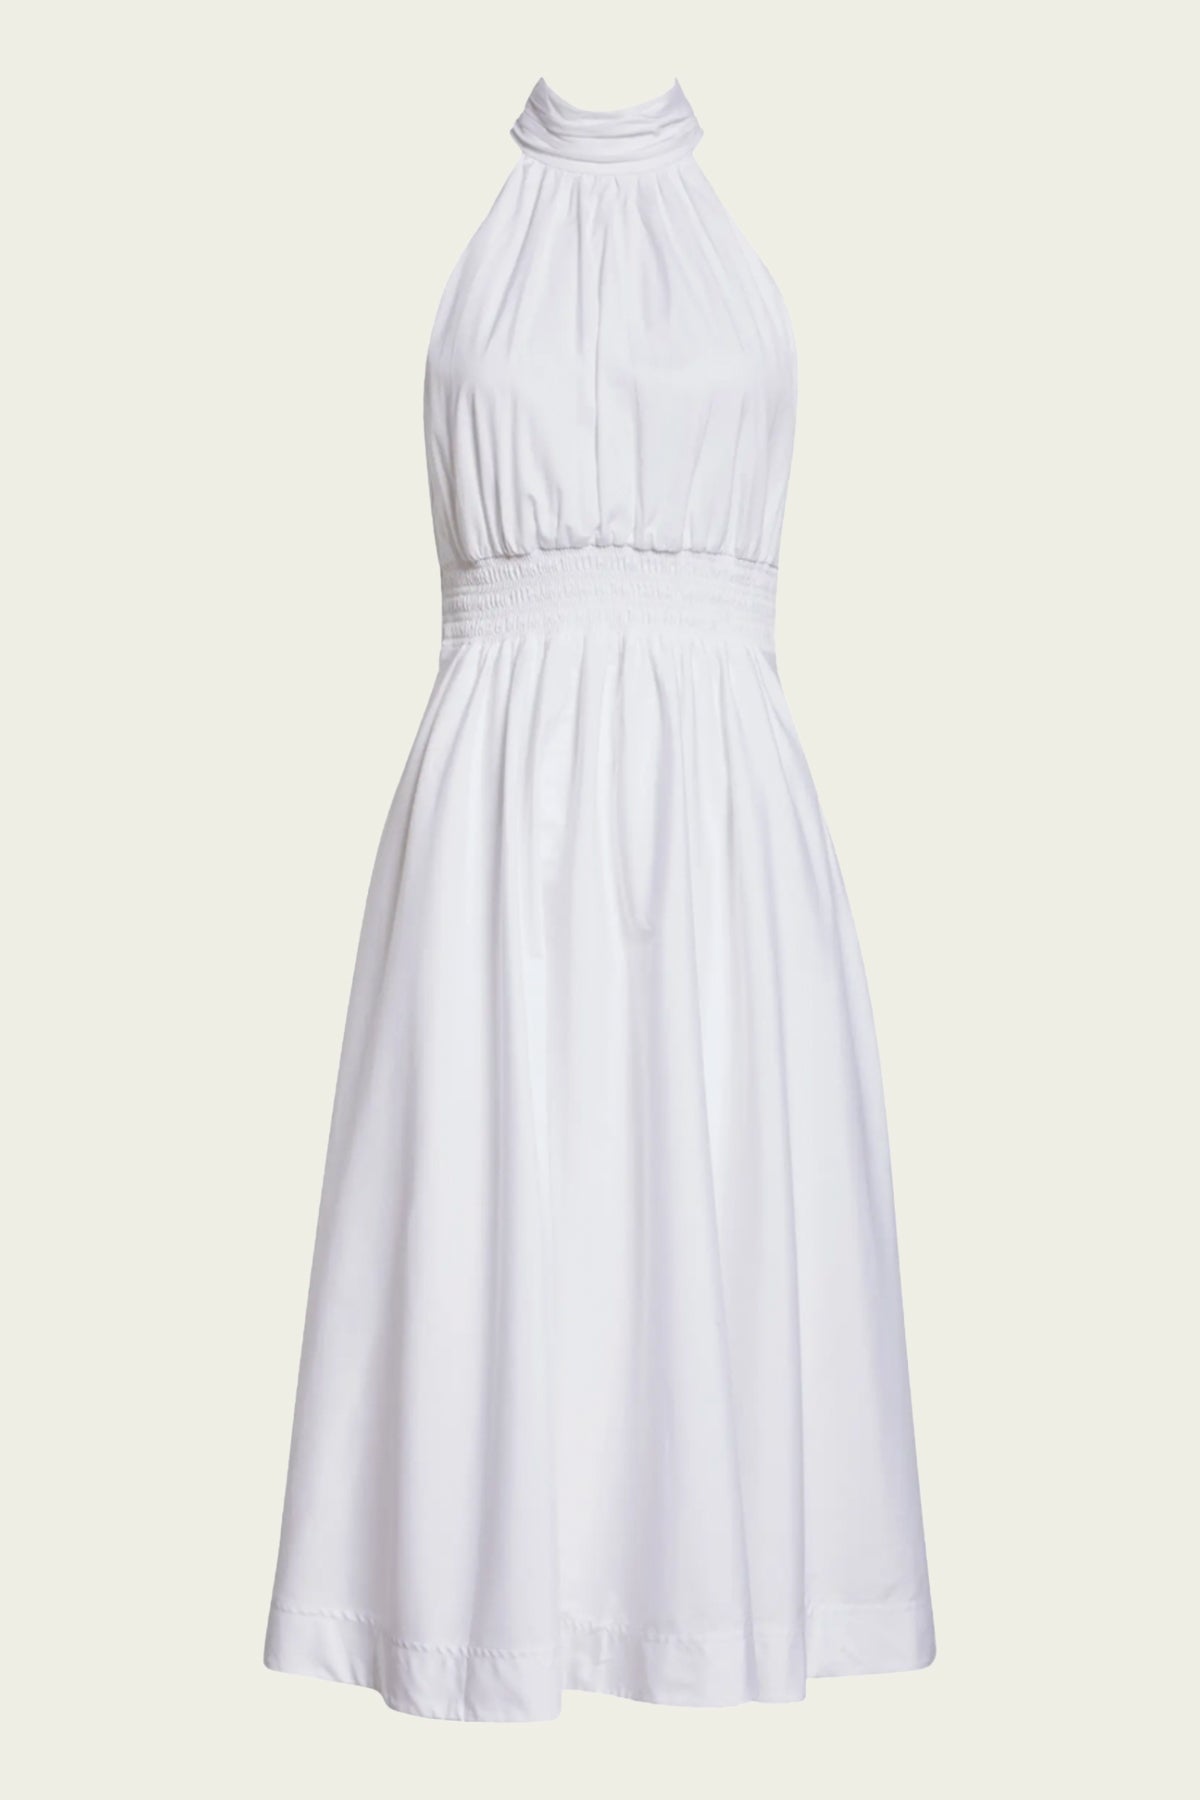 Kinny Dress in White - shop-olivia.com